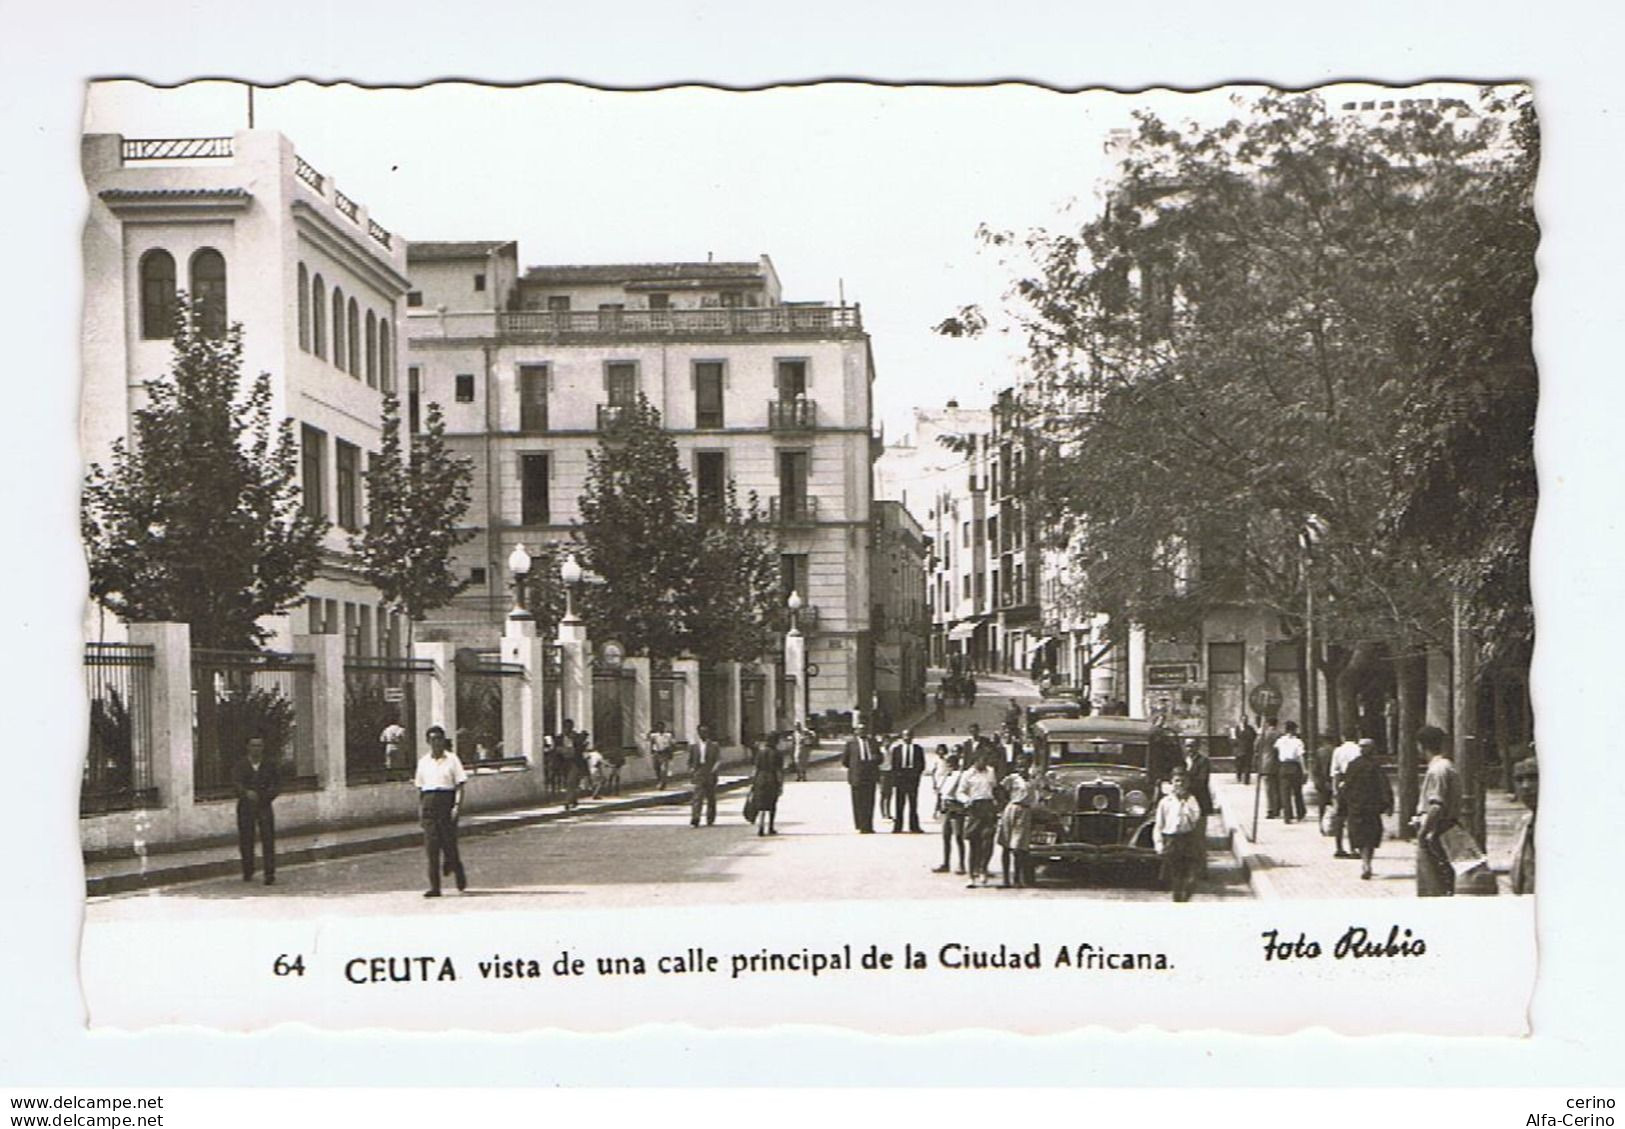 CEUTA:  VISTA  DE  UNA  CALLE  PRINCIPAL  DE  LA  CIUDAD  AFRICANA  -  FOTO  RUBIO  -  FP - Ceuta